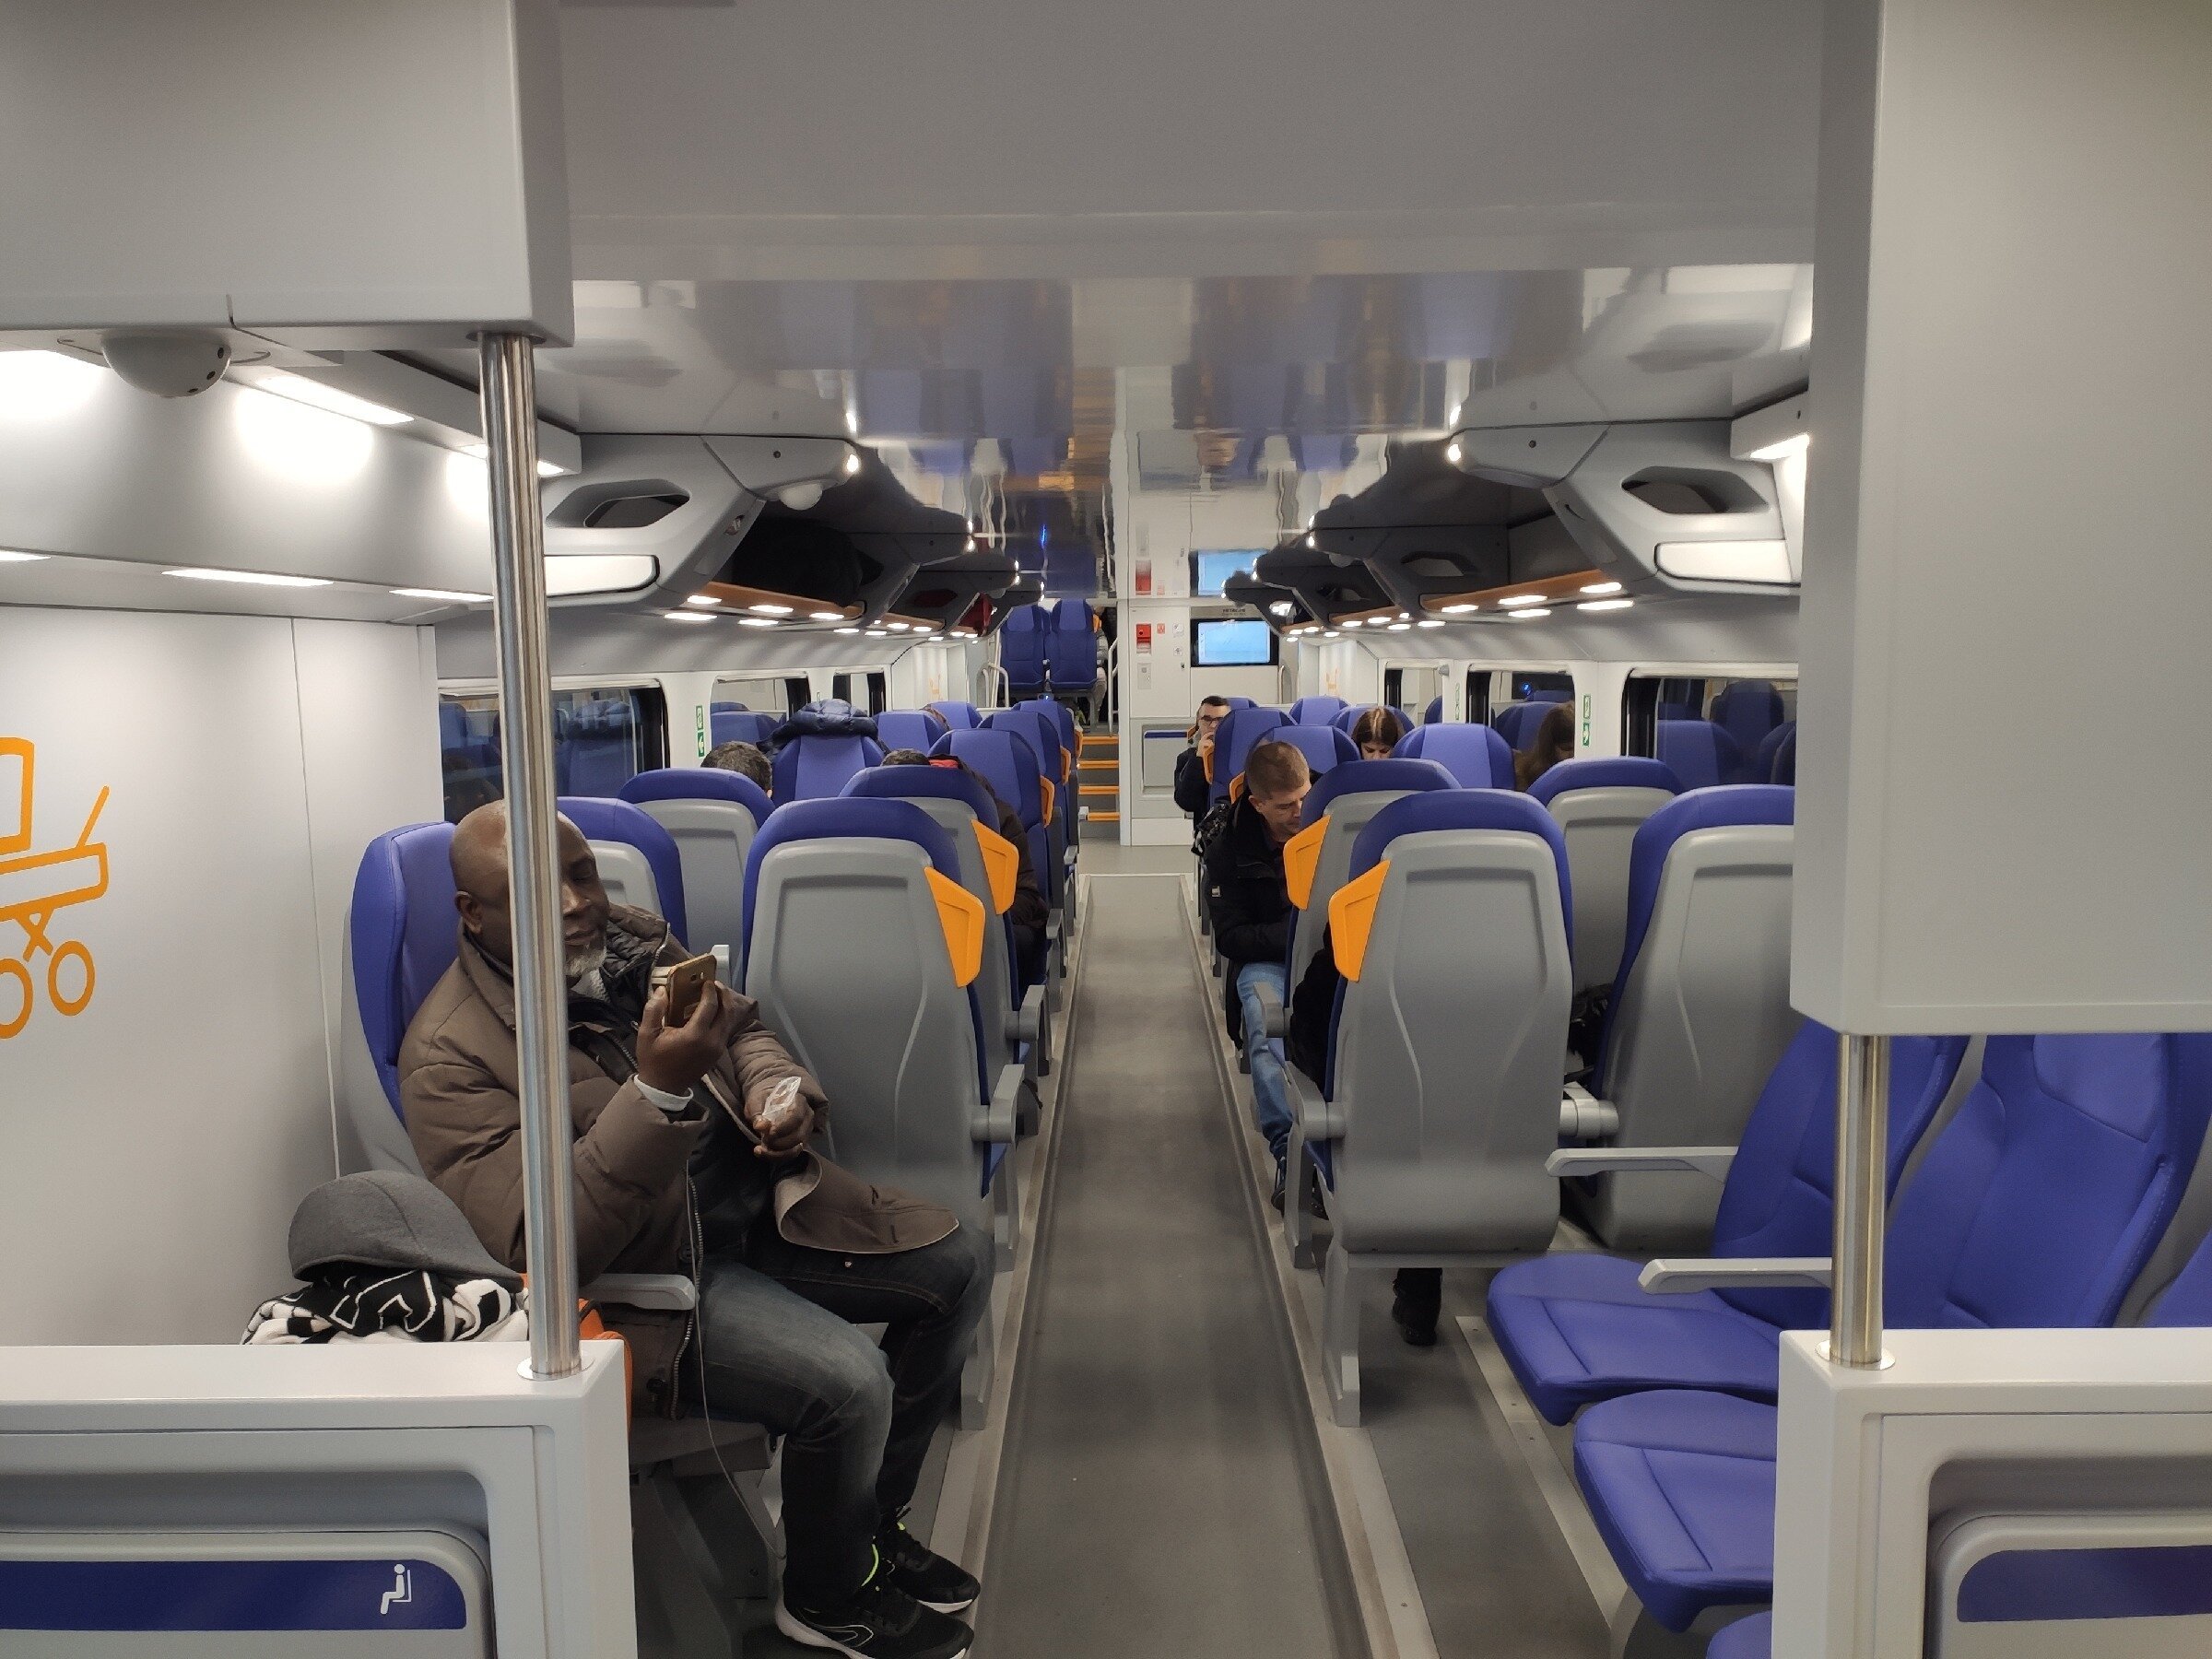 поезд ласточка фото внутри вагона сидячие места